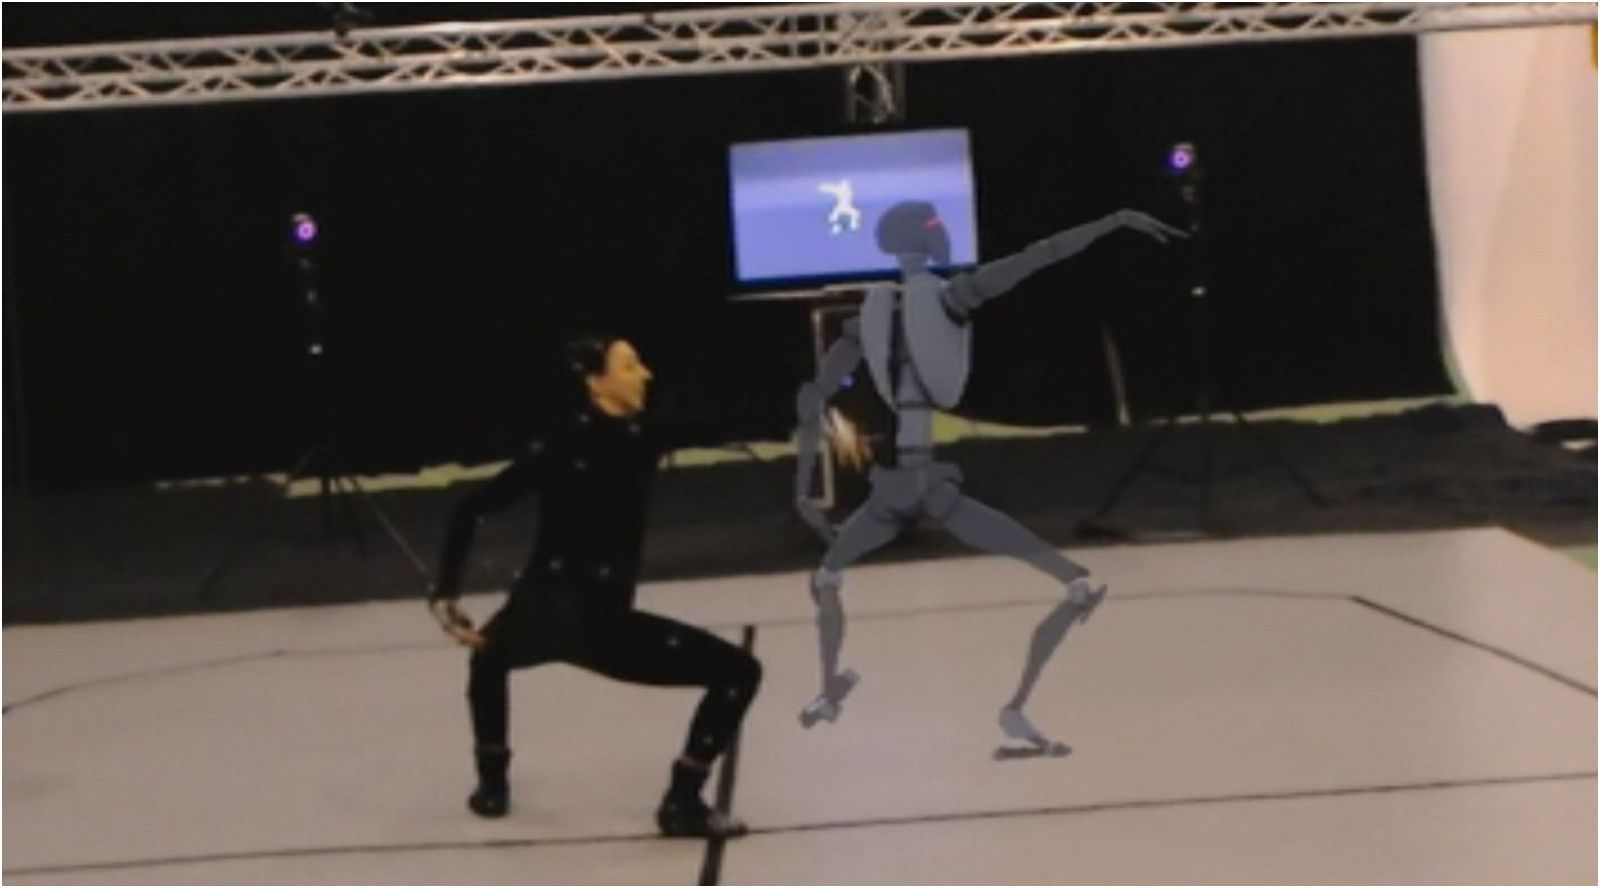 Lab24 -  Transfiere, Robots aéreos y La danza de Stocos - sumario